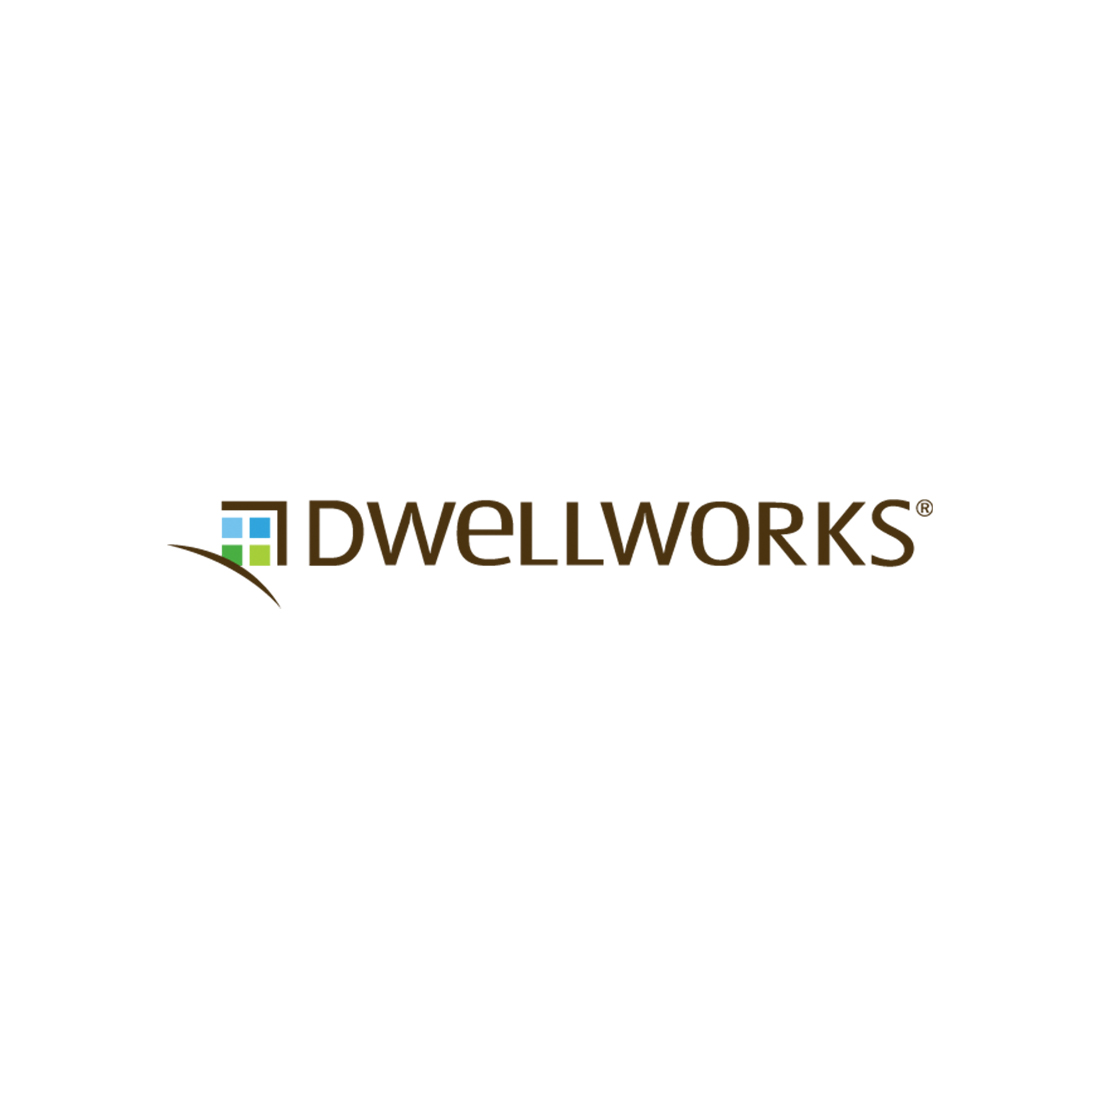 Dwellworks